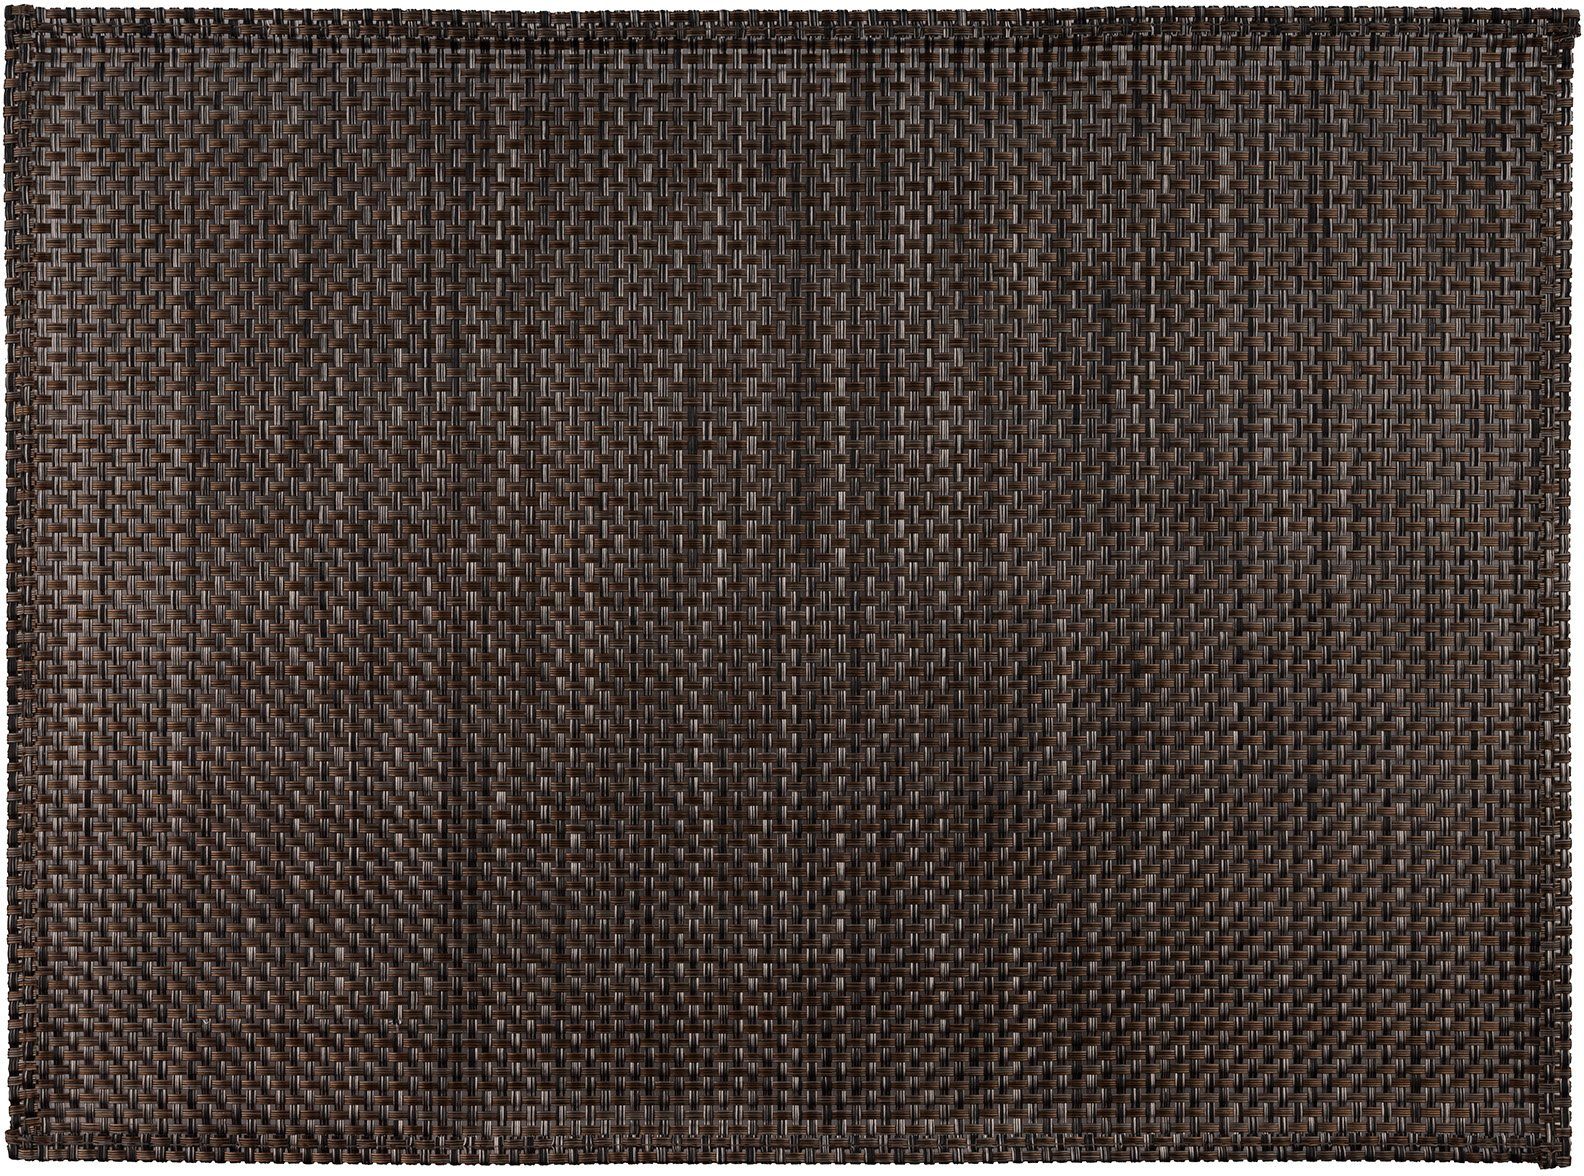 APS, mit umgenähten (6-St), Platzset, Schmalband, cm leicht 45x33 Rand, abwischbar, braun/dunkelbeige